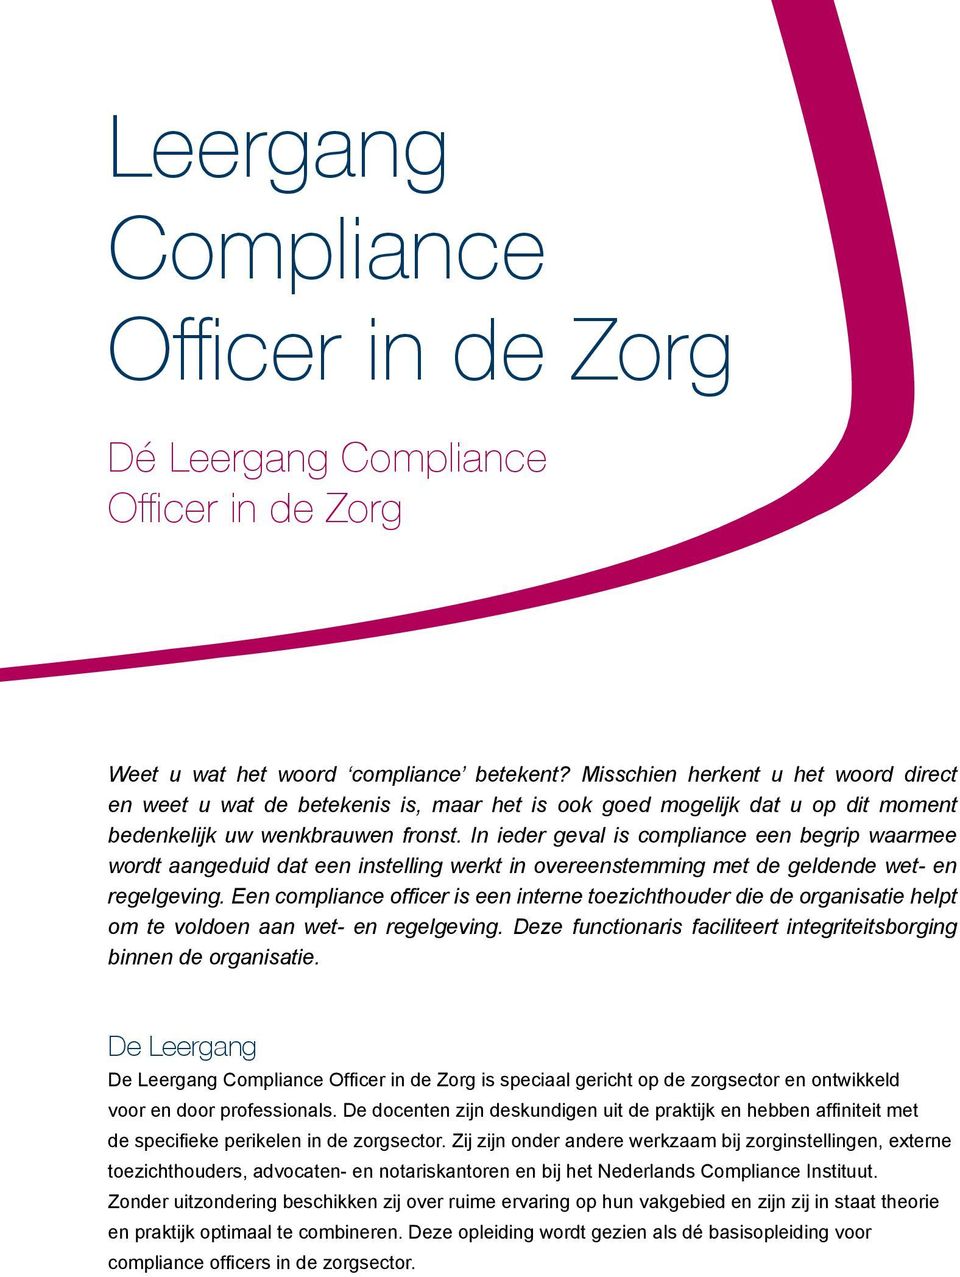 In ieder geval is compliance een begrip waarmee wordt aangeduid dat een instelling werkt in overeenstemming met de geldende wet- en regelgeving.